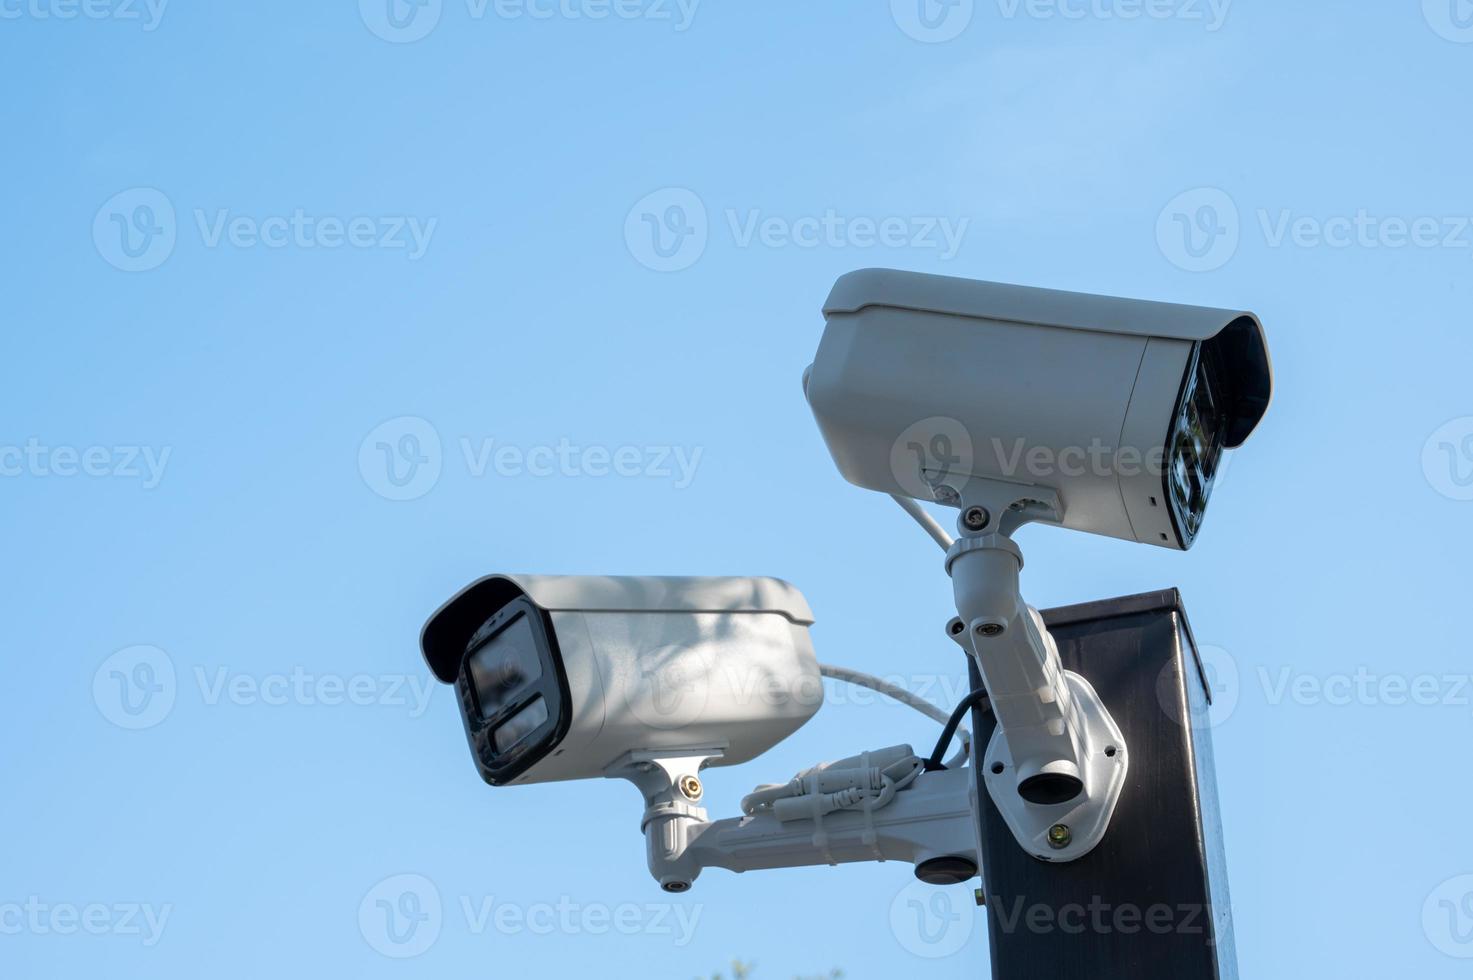 twee bewakingsmachines langs de weg onder de blauwe lucht foto